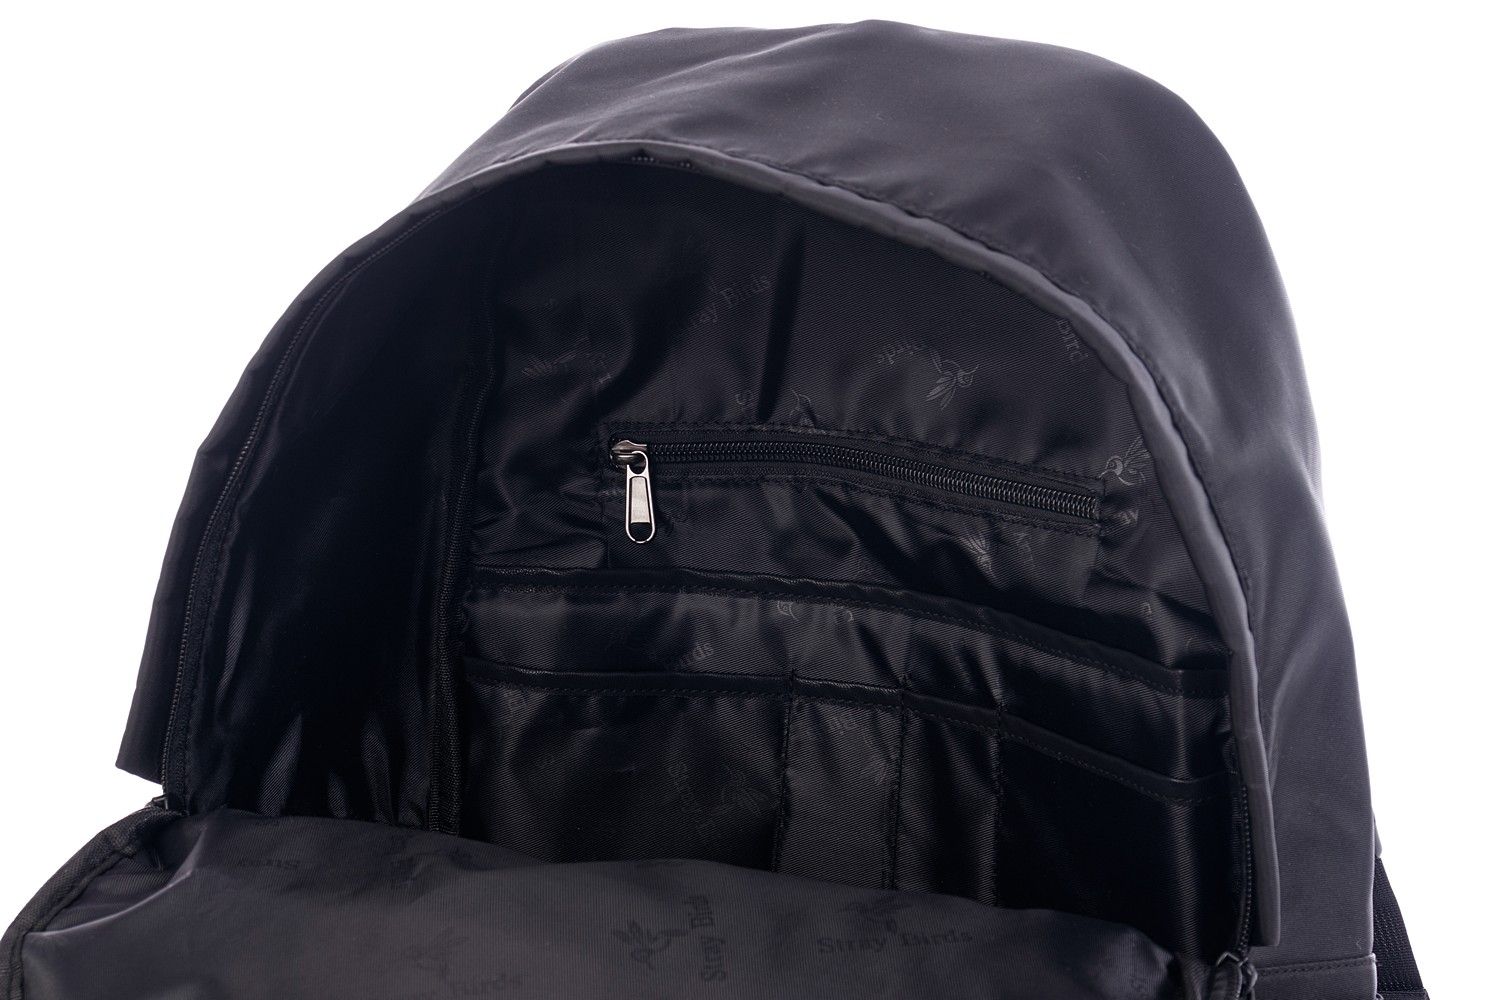 Рюкзак мужской городской, черный однотонный, со стандартными лямками, 25л